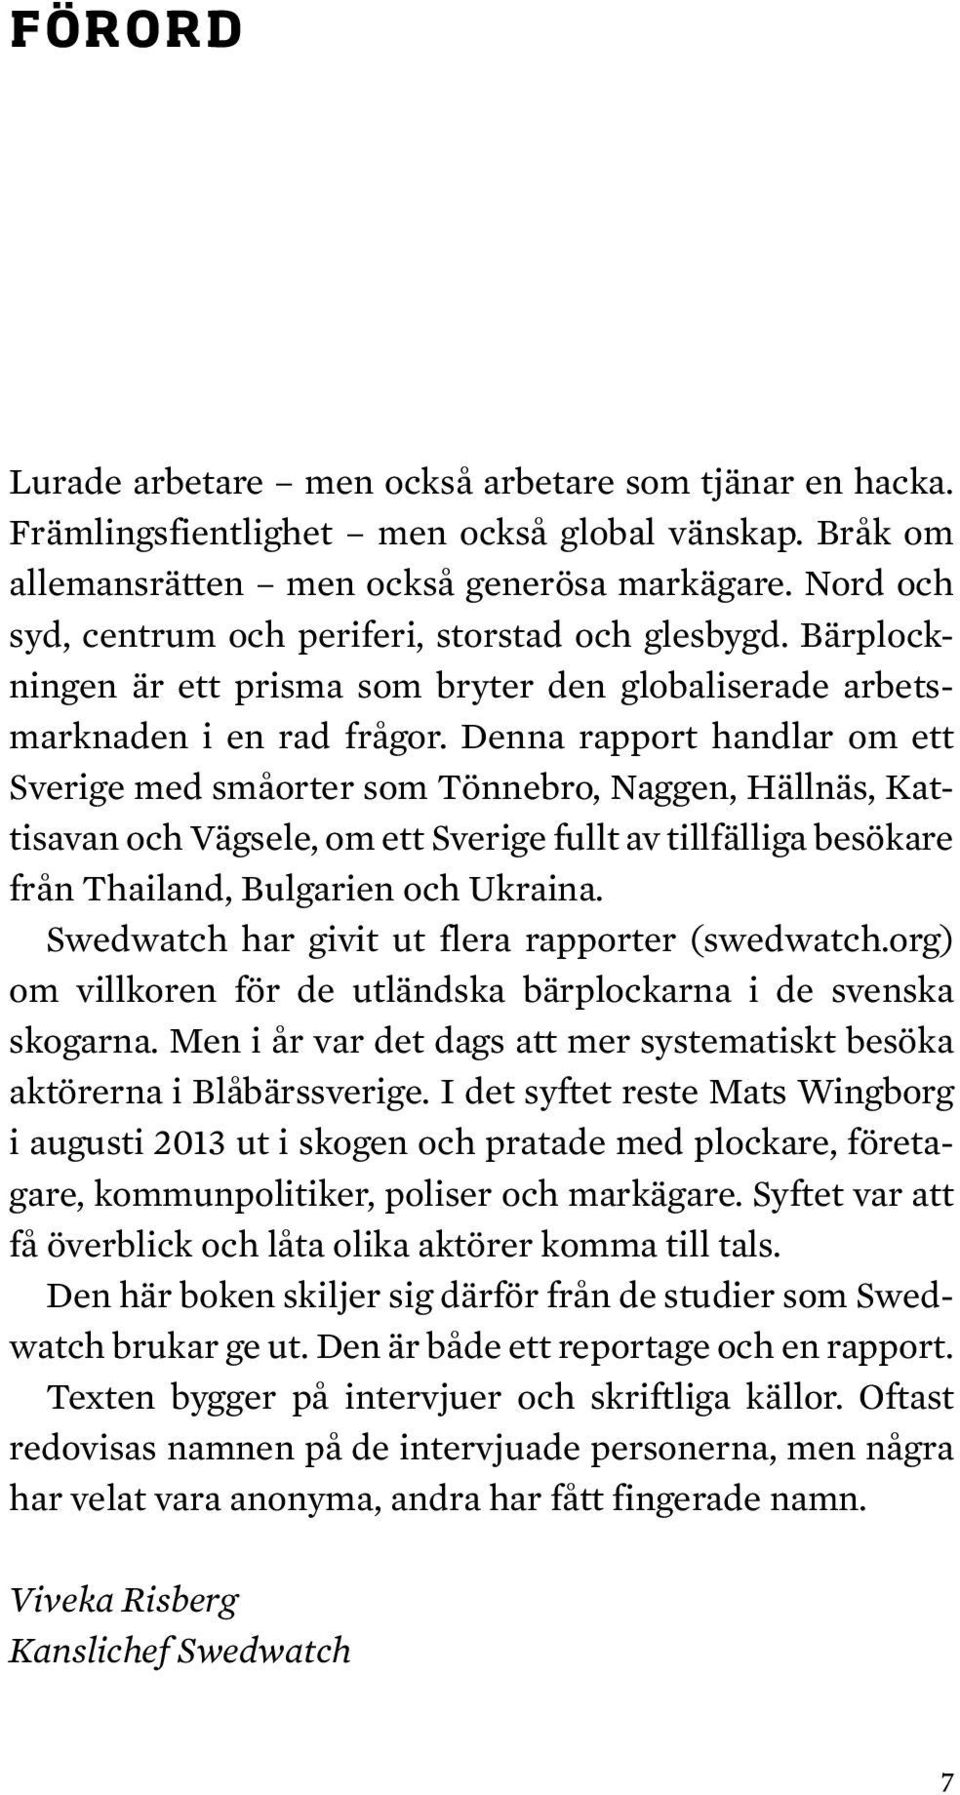 Denna rapport handlar om ett Sverige med småorter som Tönnebro, Naggen, Hällnäs, Kattisavan och Vägsele, om ett Sverige fullt av tillfälliga besökare från Thailand, Bulgarien och Ukraina.